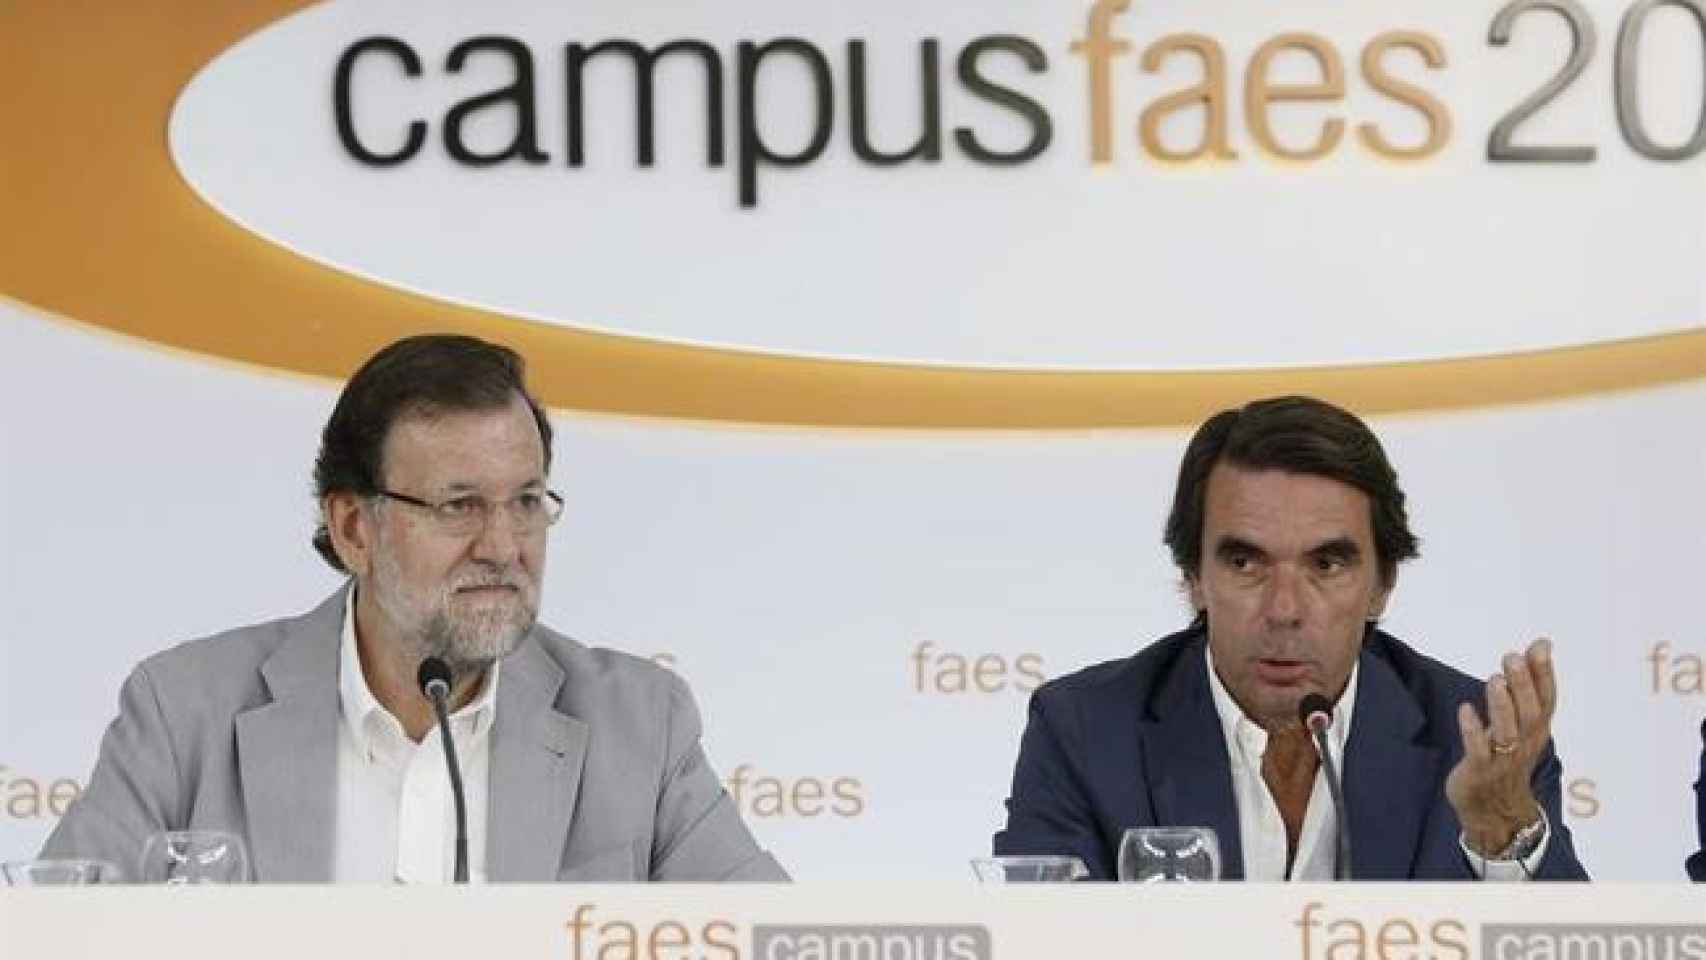 Mariano Rajoy y José María Aznar, en el Campus FAES 2015 en julio en Guadarrama